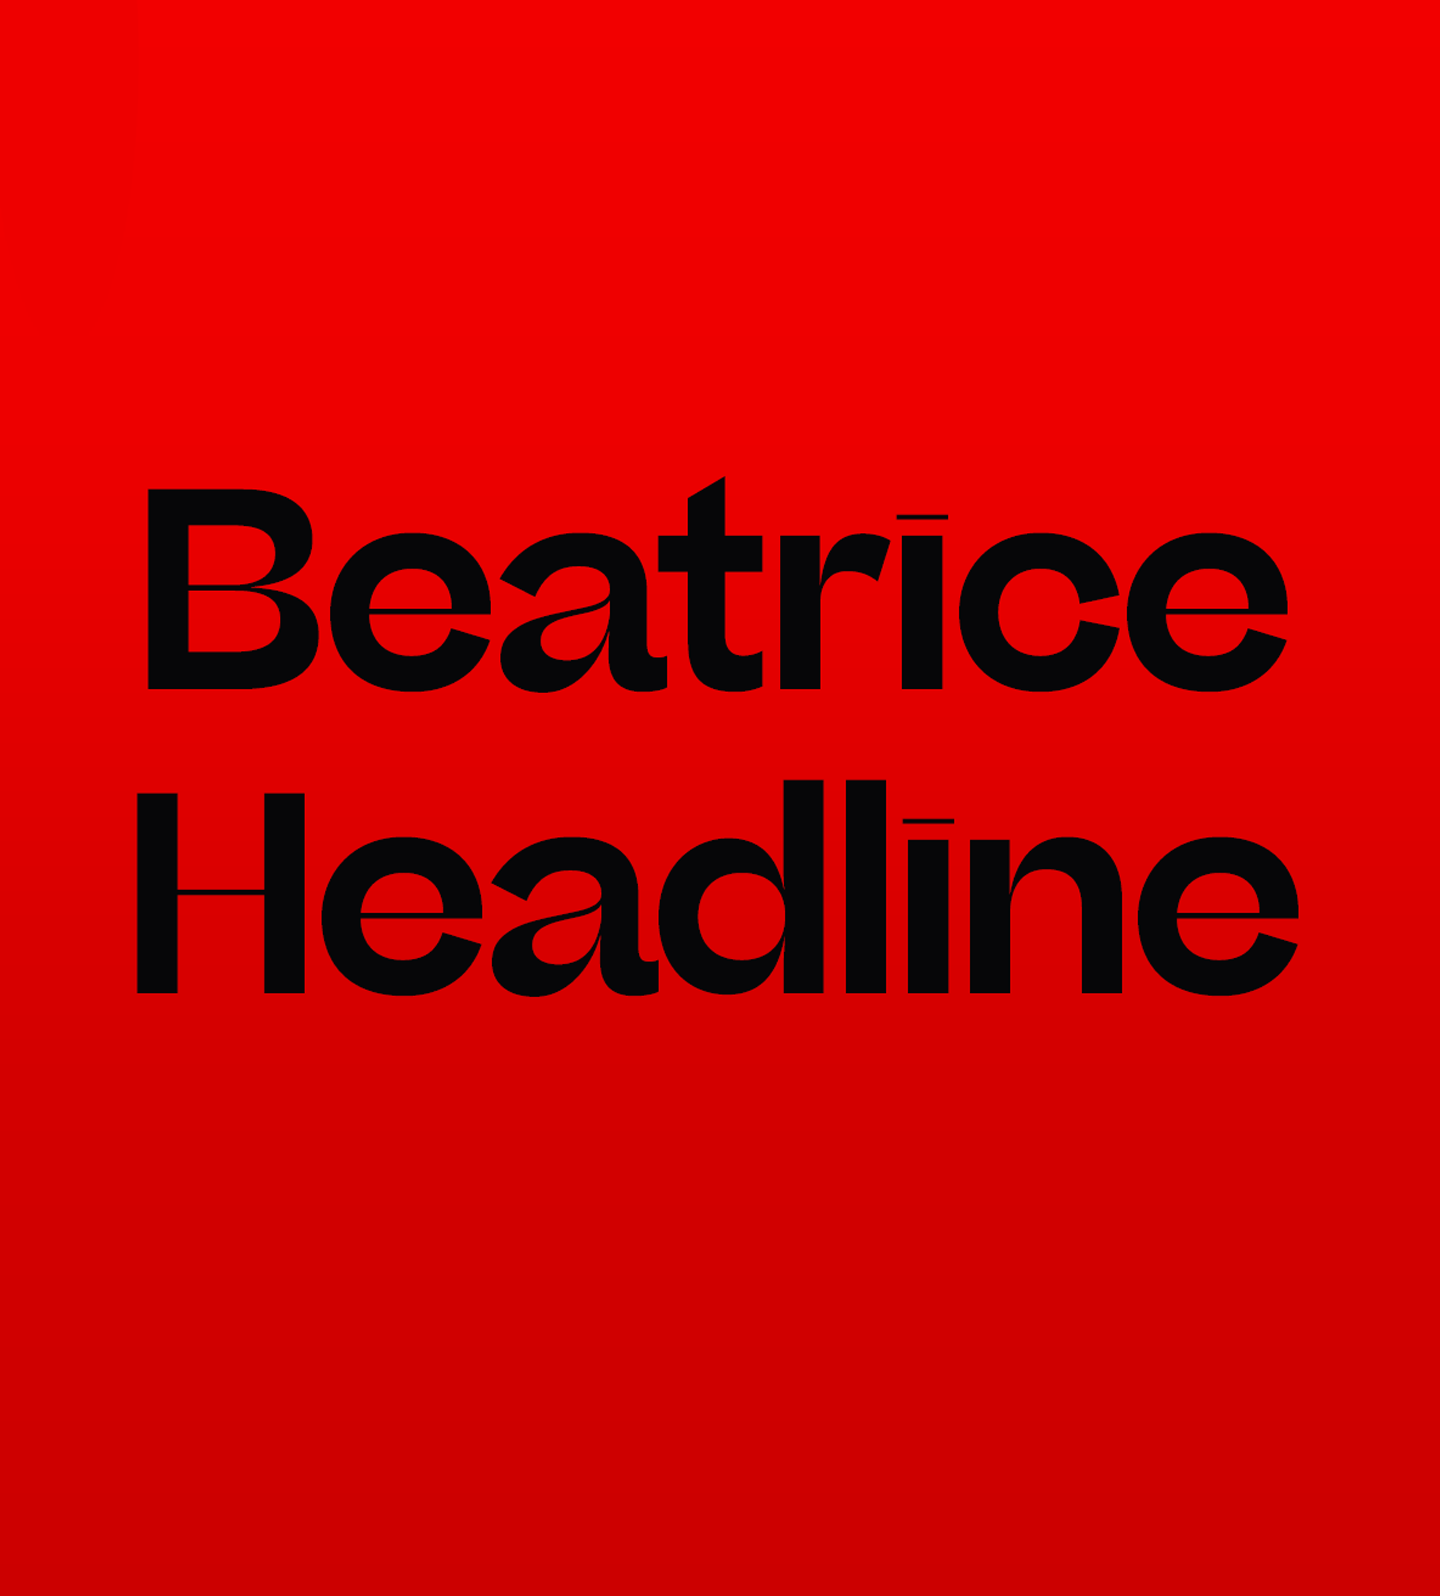 Beatrice Headline Font